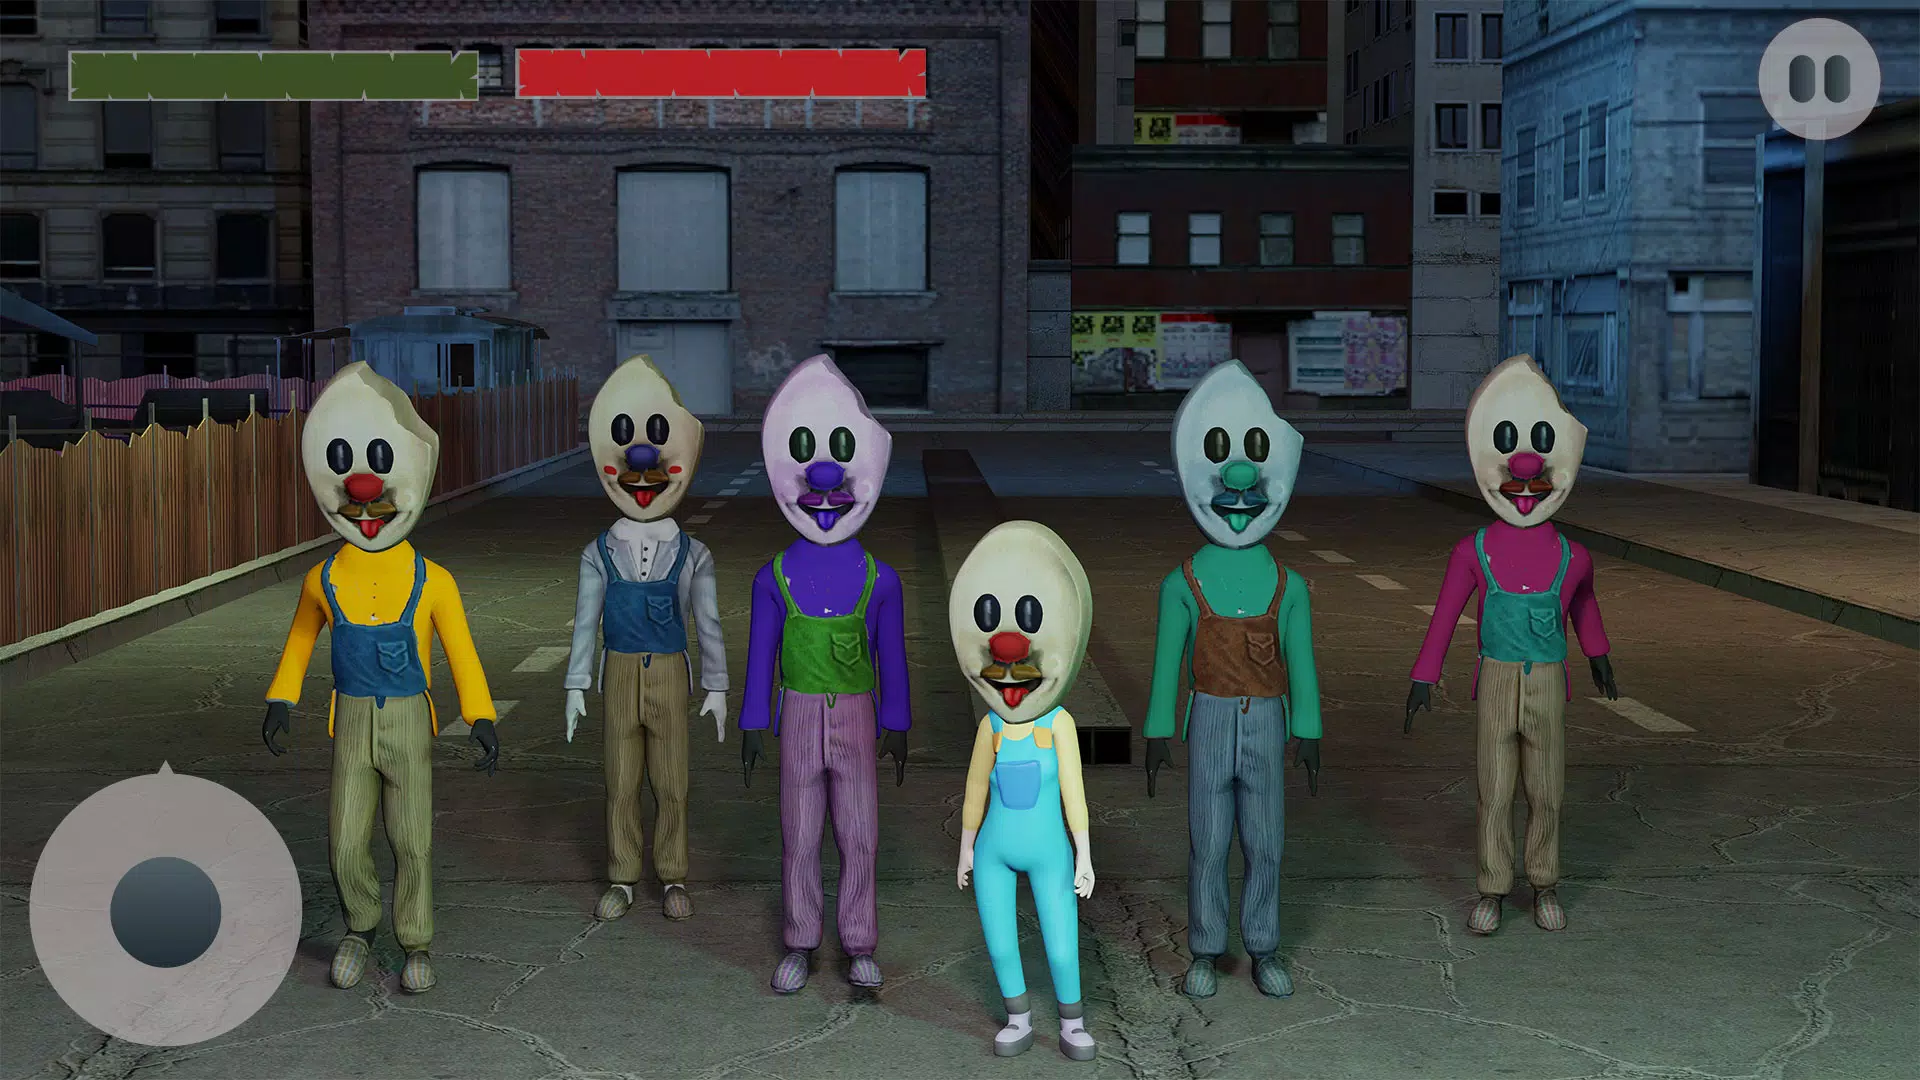 Jogo Icescream Horror Neighborhood no Jogos 360